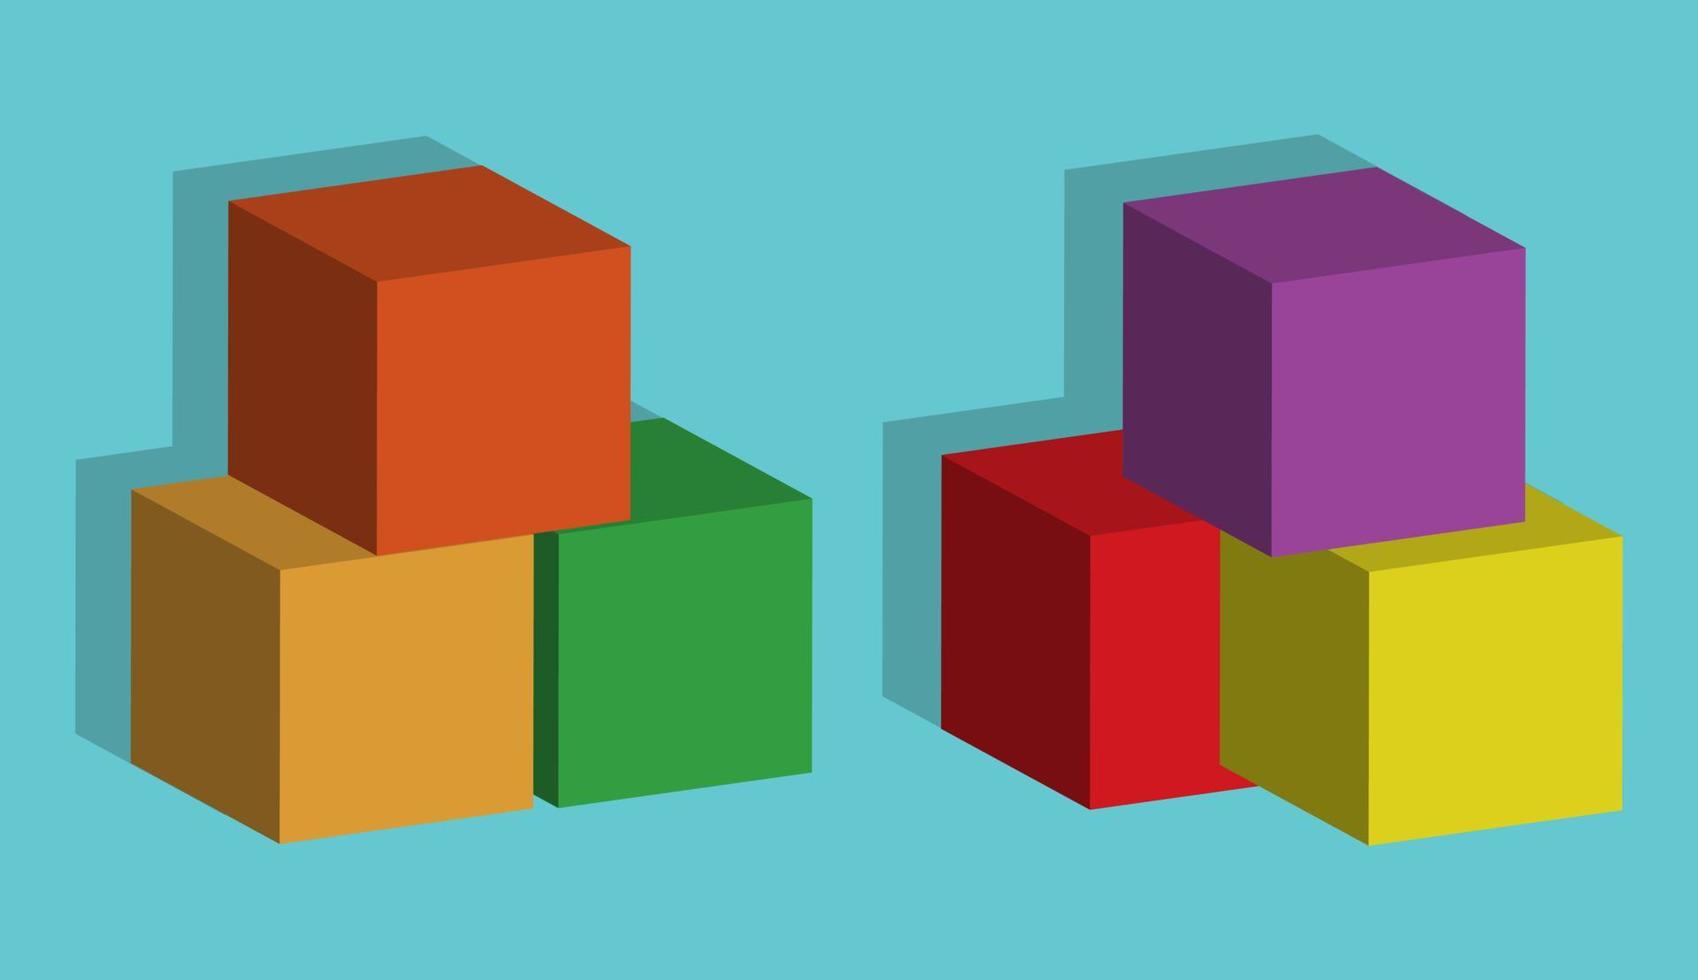 stapel 3D-vierkanten met verschillende kleuren geïsoleerd op blauwe achtergrond. vector illustratie